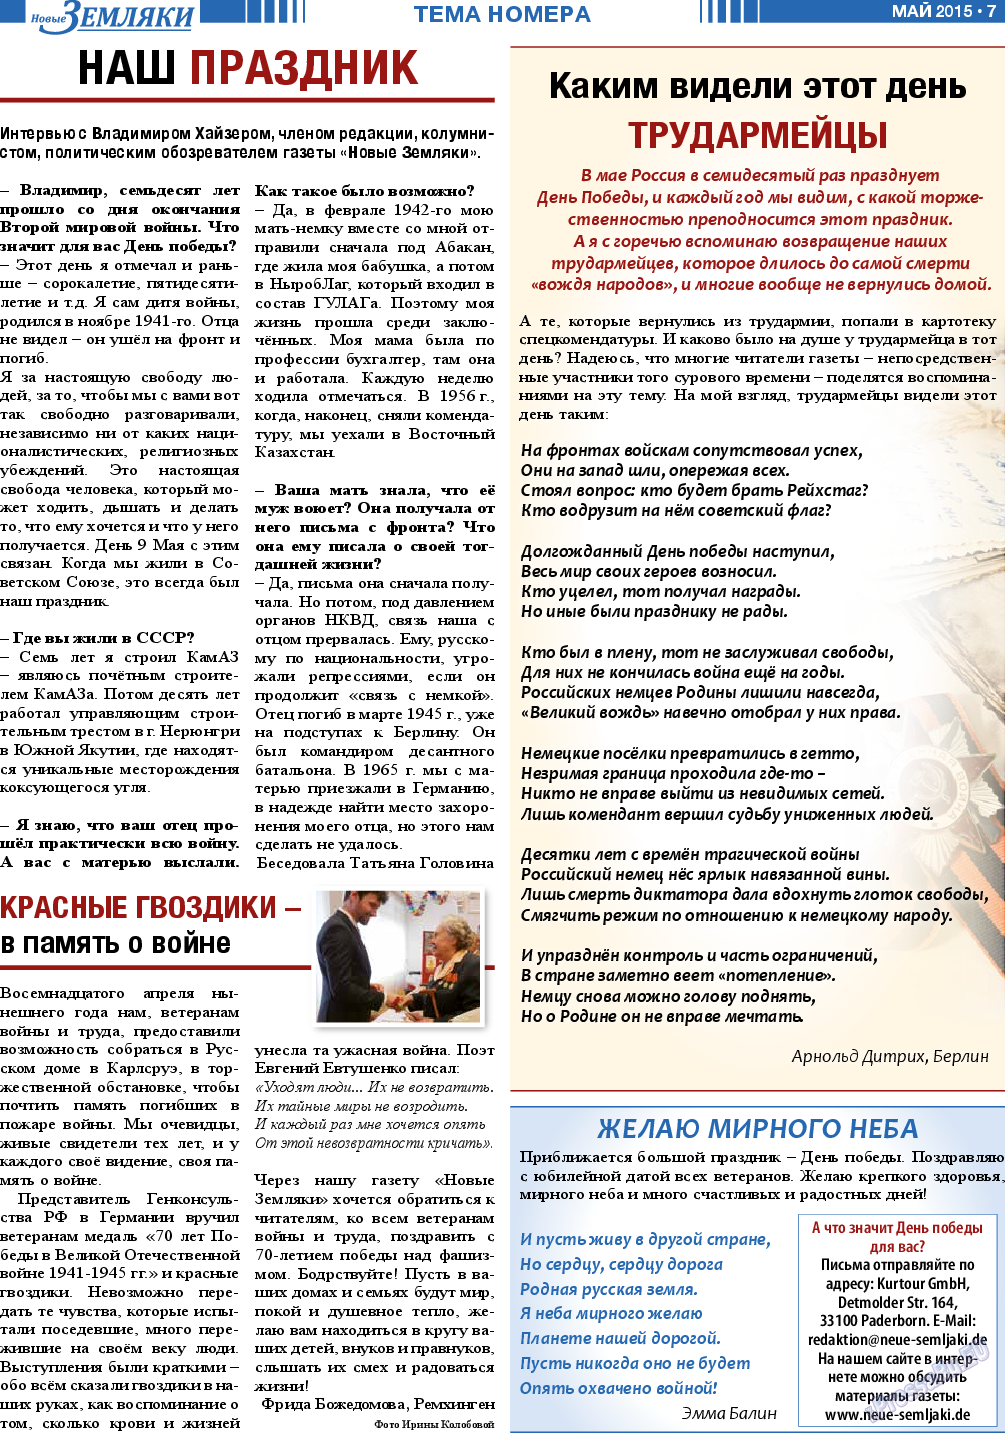 Новые Земляки, газета. 2015 №5 стр.7